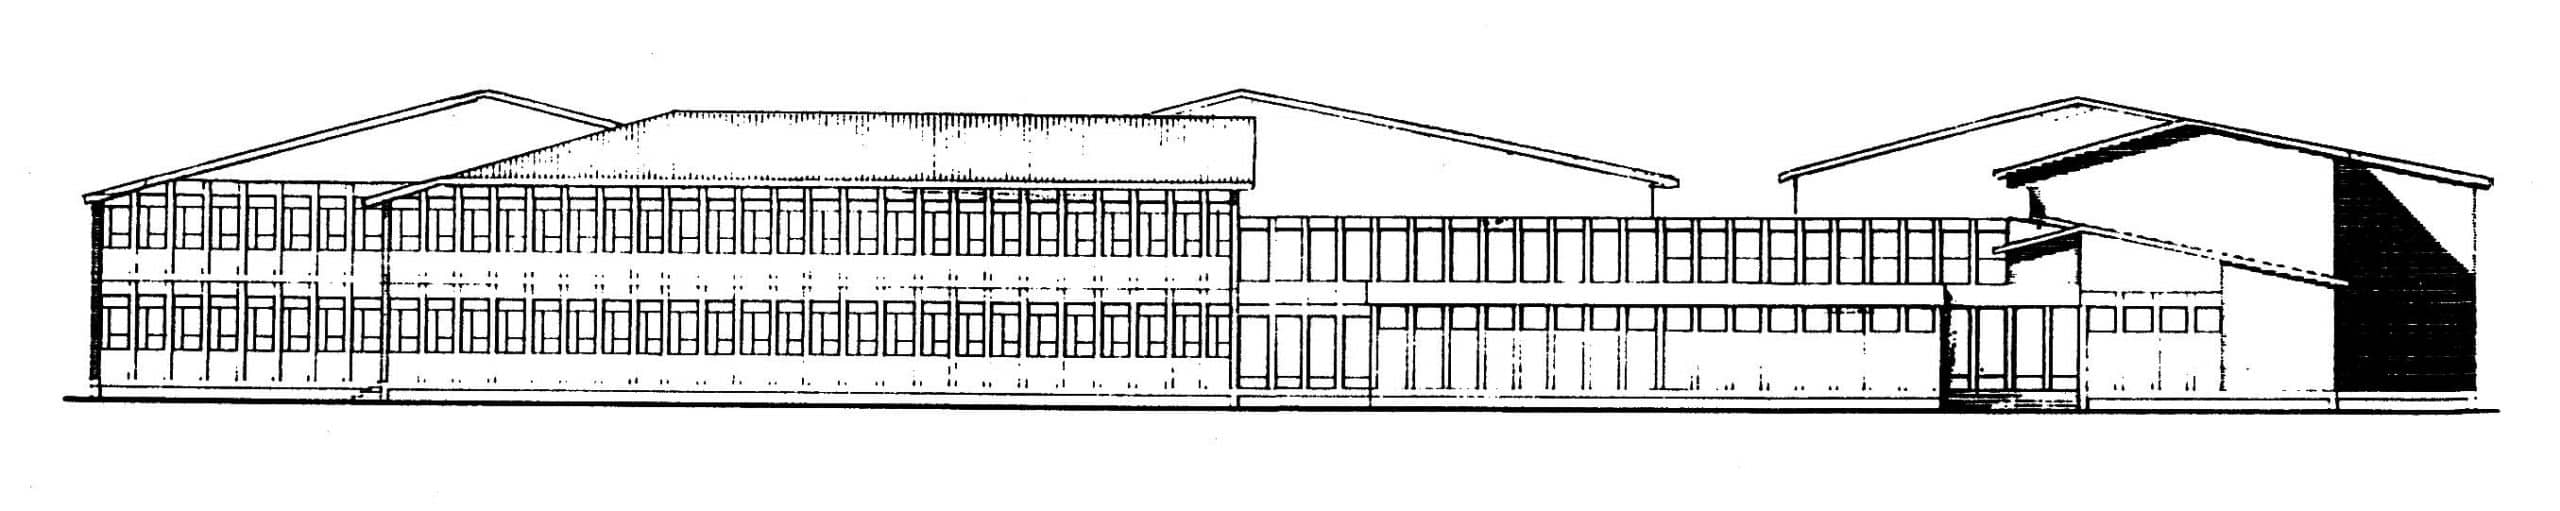 7 - Istituto Tecnico Industriale a Palestrina (RM), per Provincia di Roma - Prospetto